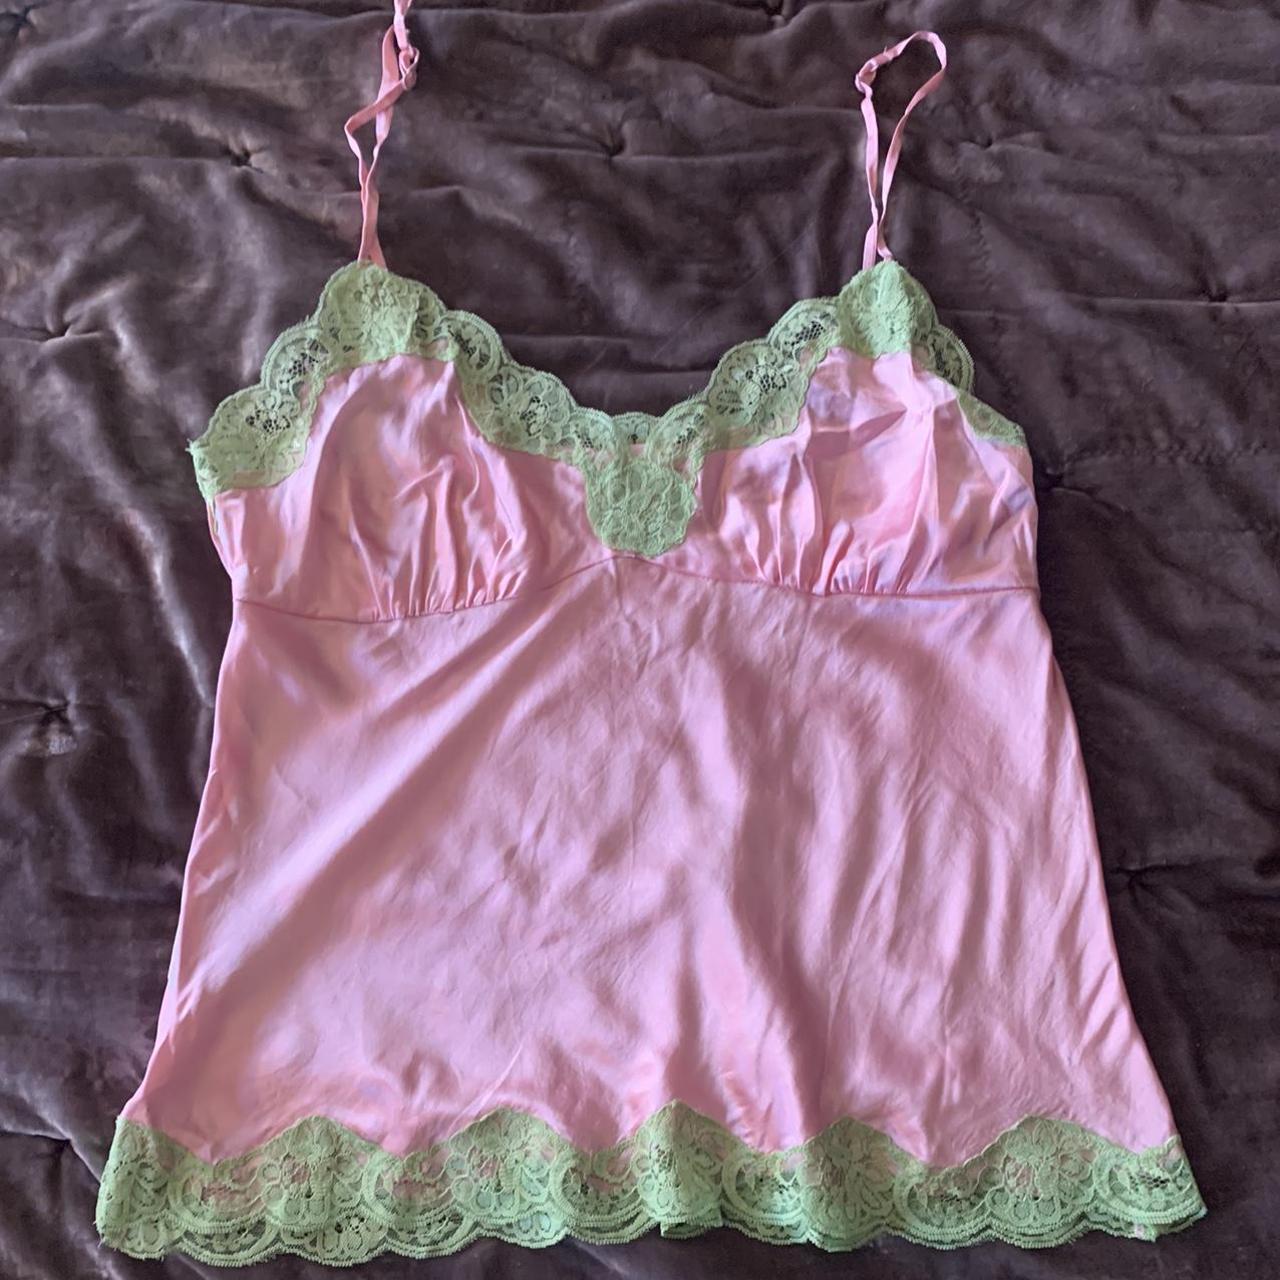 Women's Green and Pink Underwear | Depop